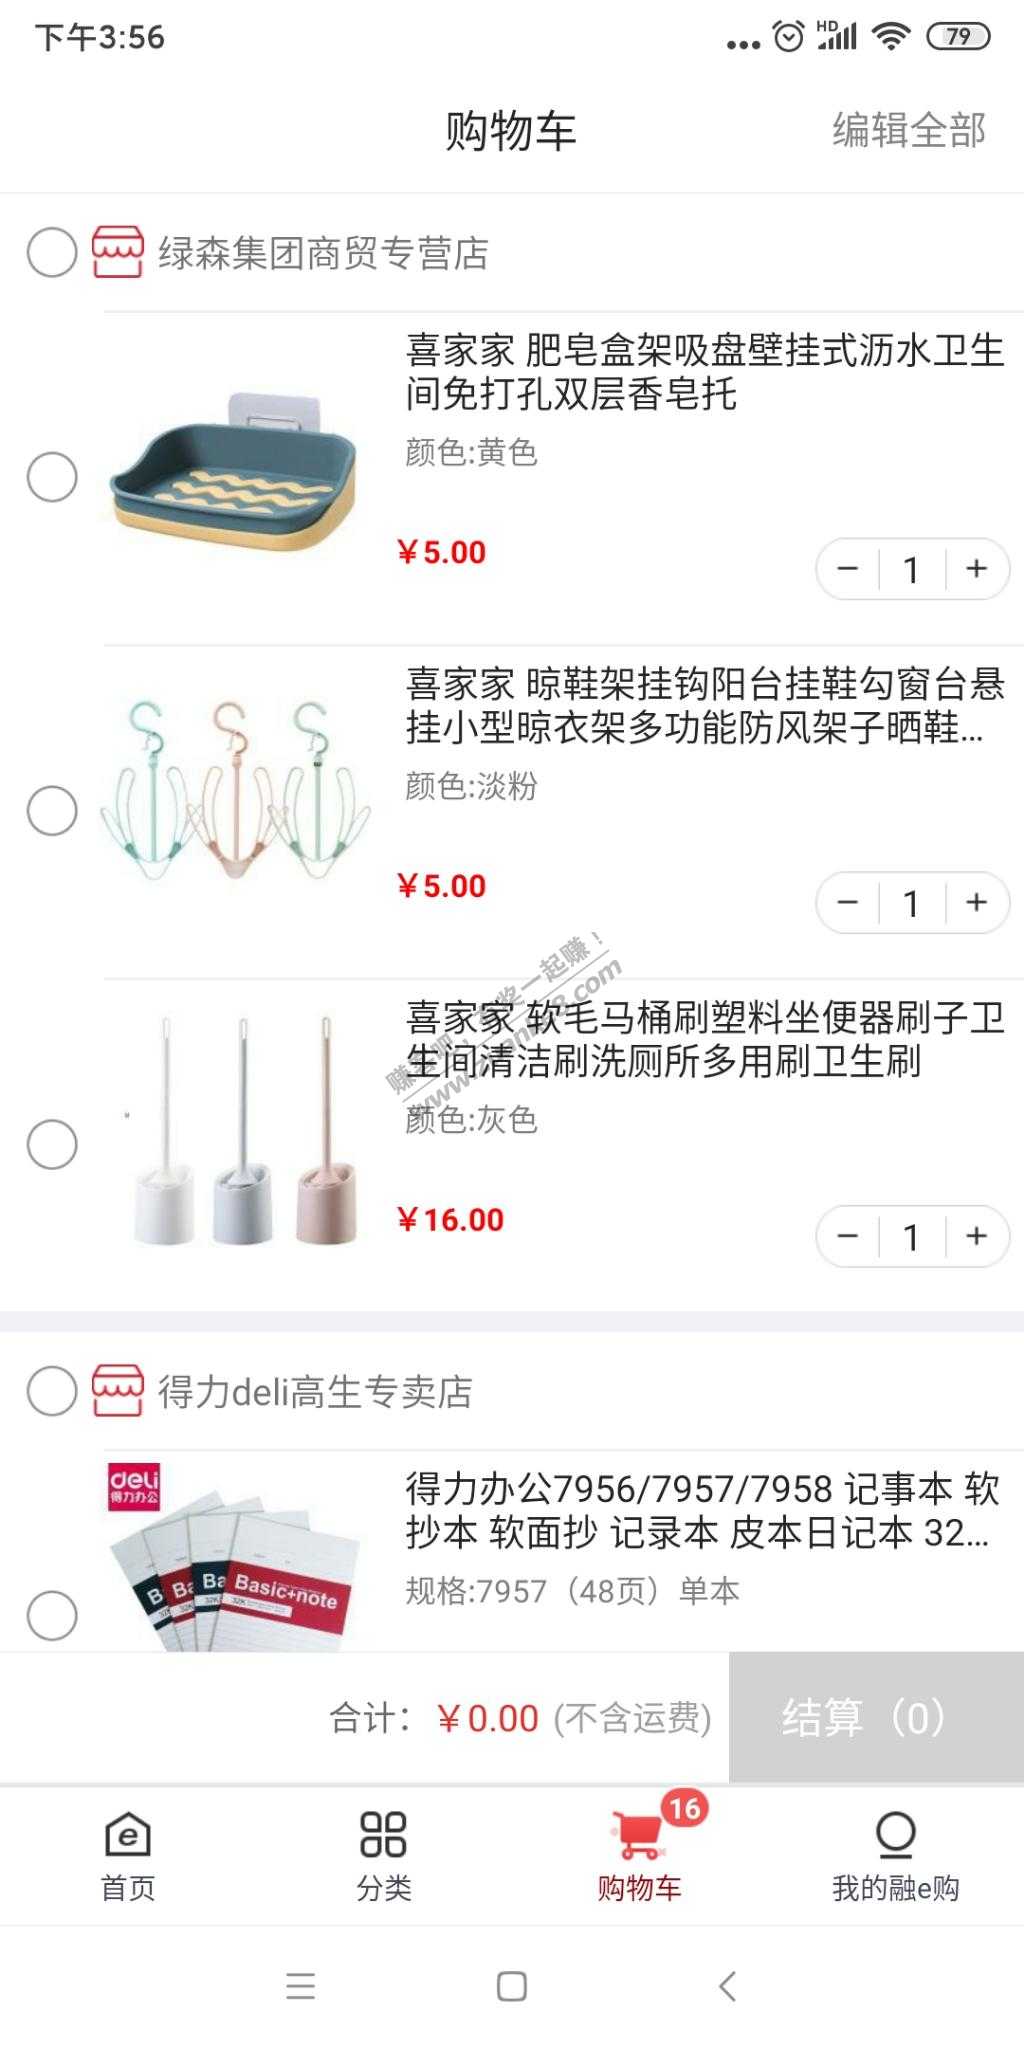 融e购五元10元商品可参考-惠小助(52huixz.com)